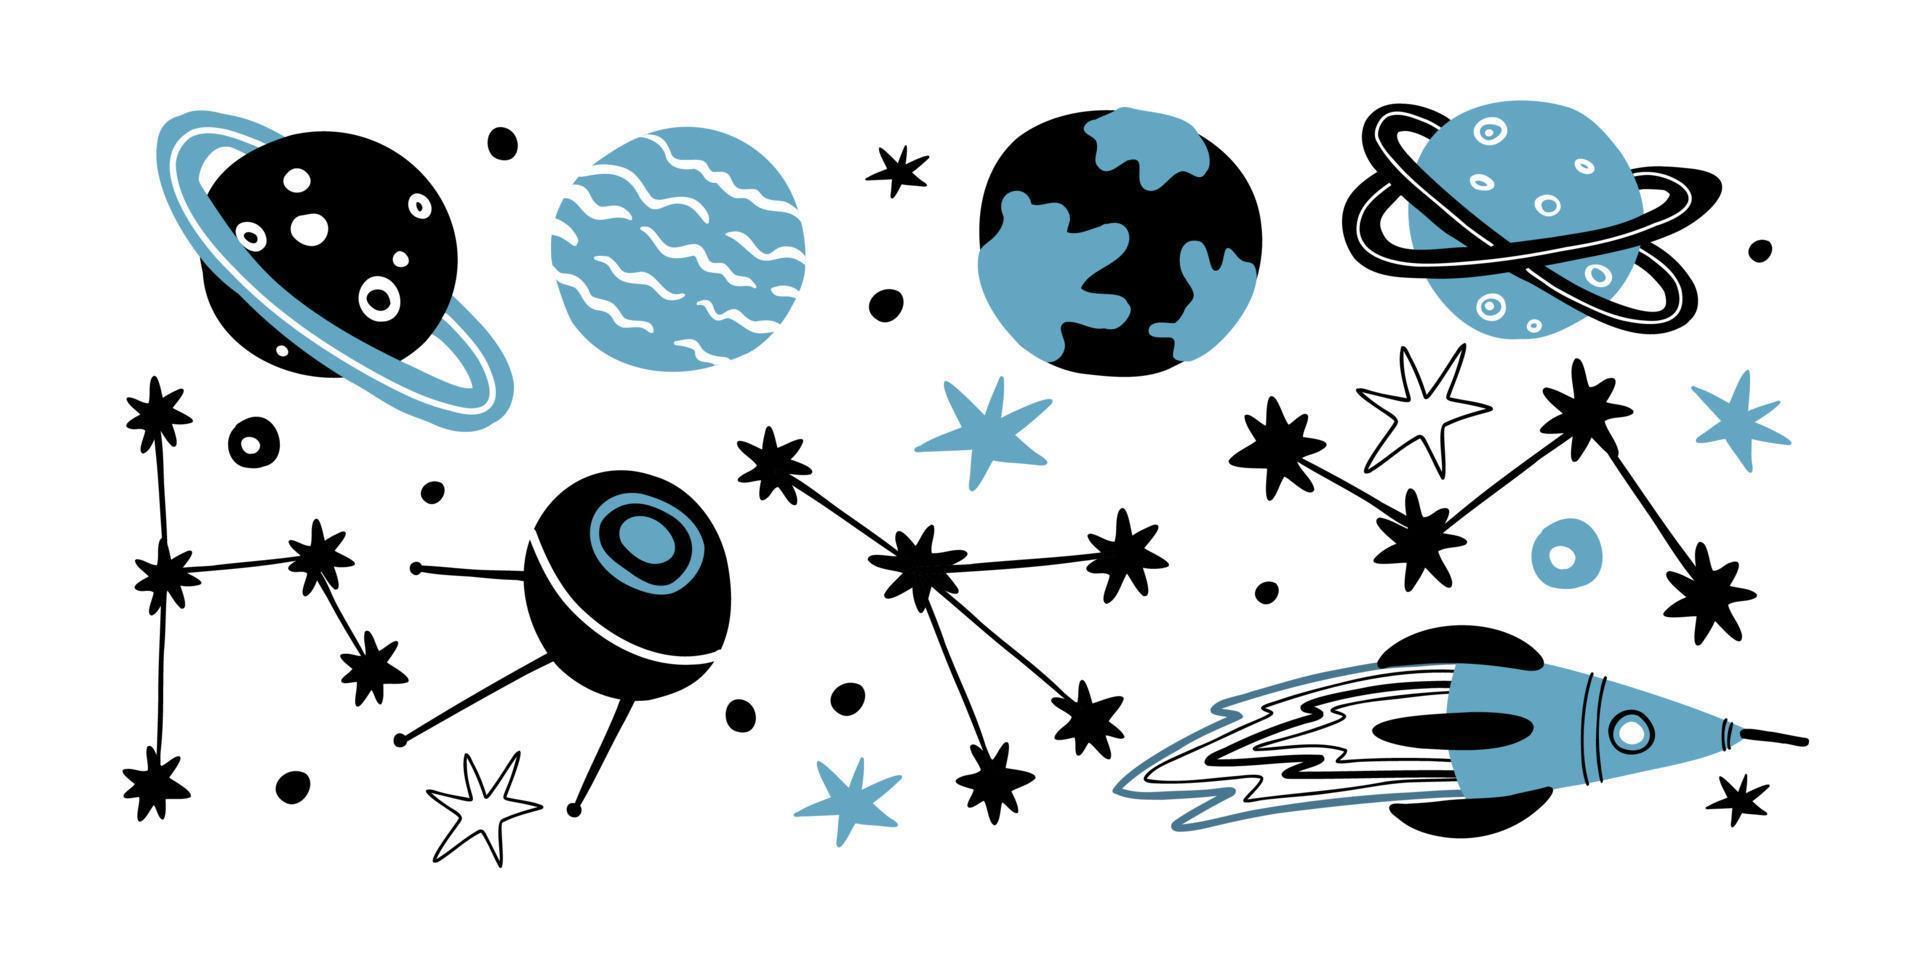 ensemble plat avec des constellations de différentes formes, planètes, étoiles, satellite et fusée. illustration vectorielle dessinée à la main. vecteur